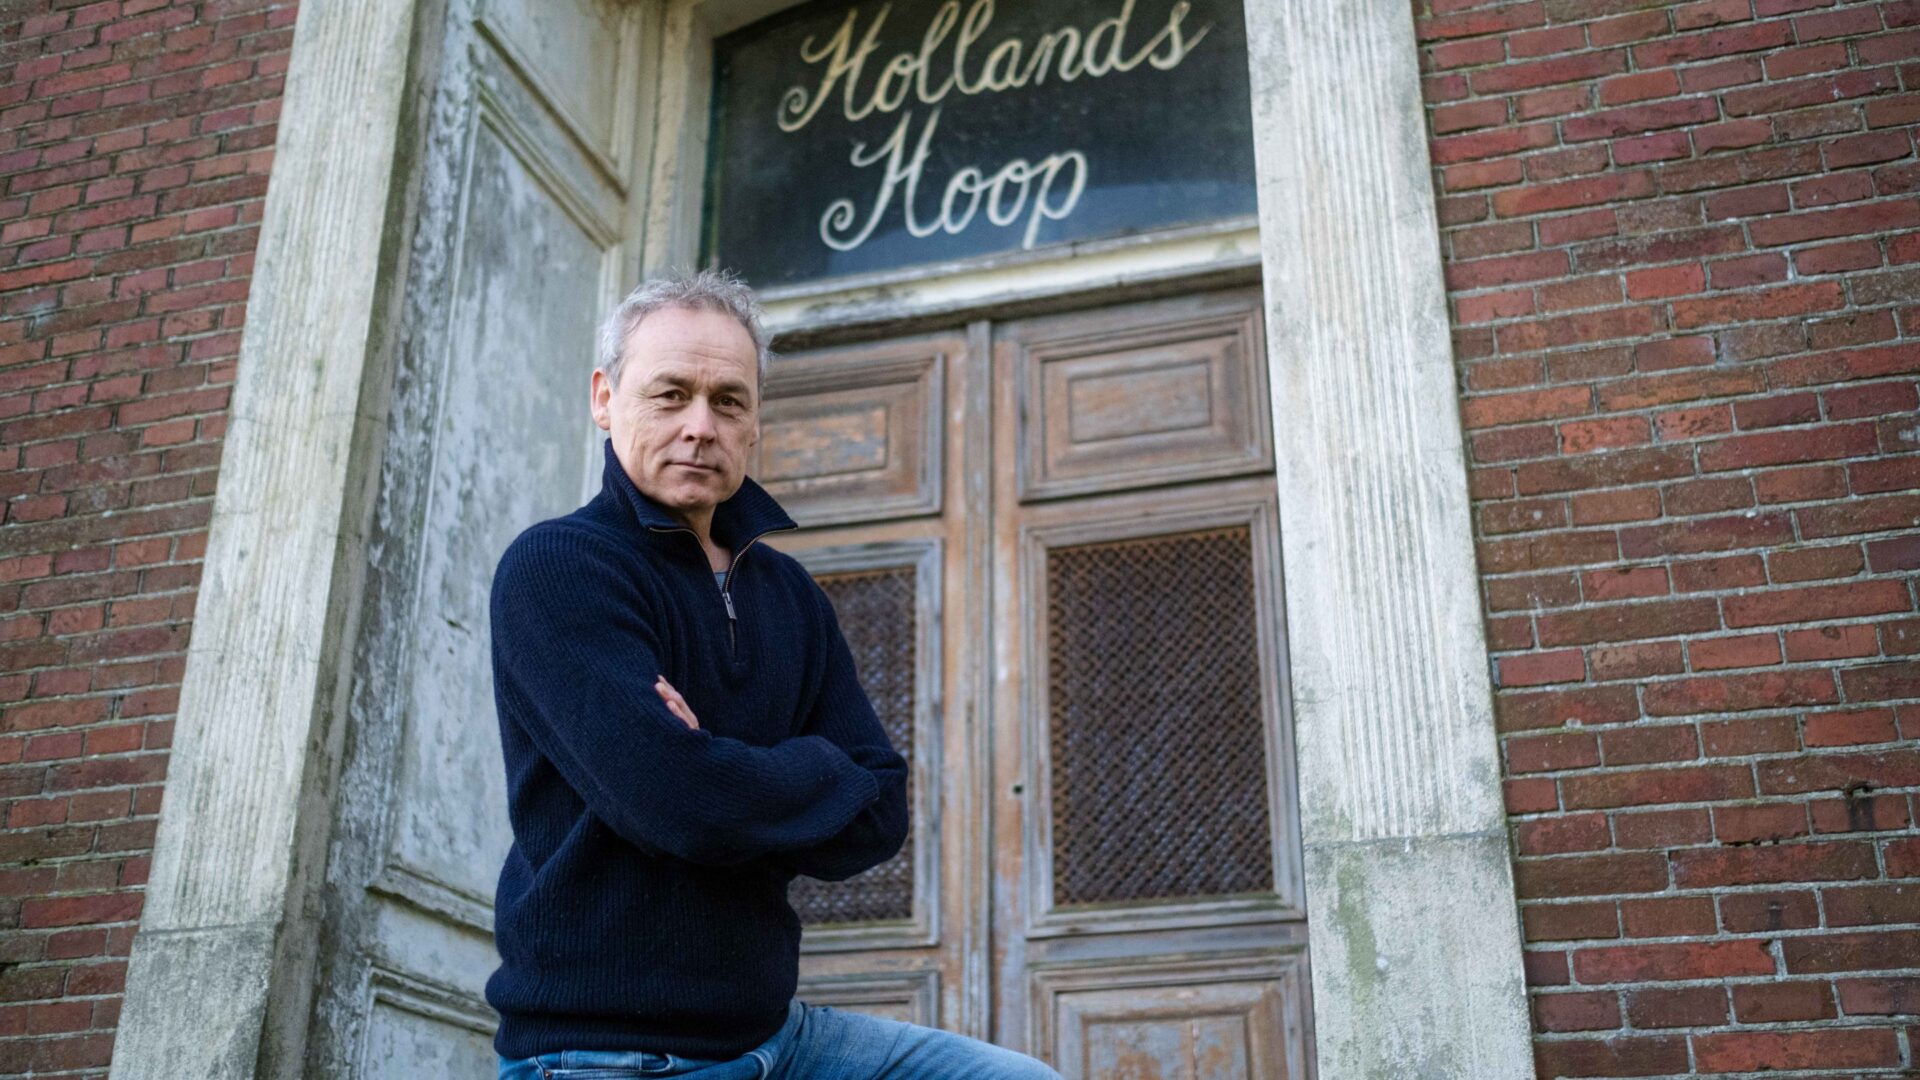 Acteur Marcel Hensema staat voor de boerderij waar de tekst "Hollands Hoop"boven een deur staat uitgebeeld